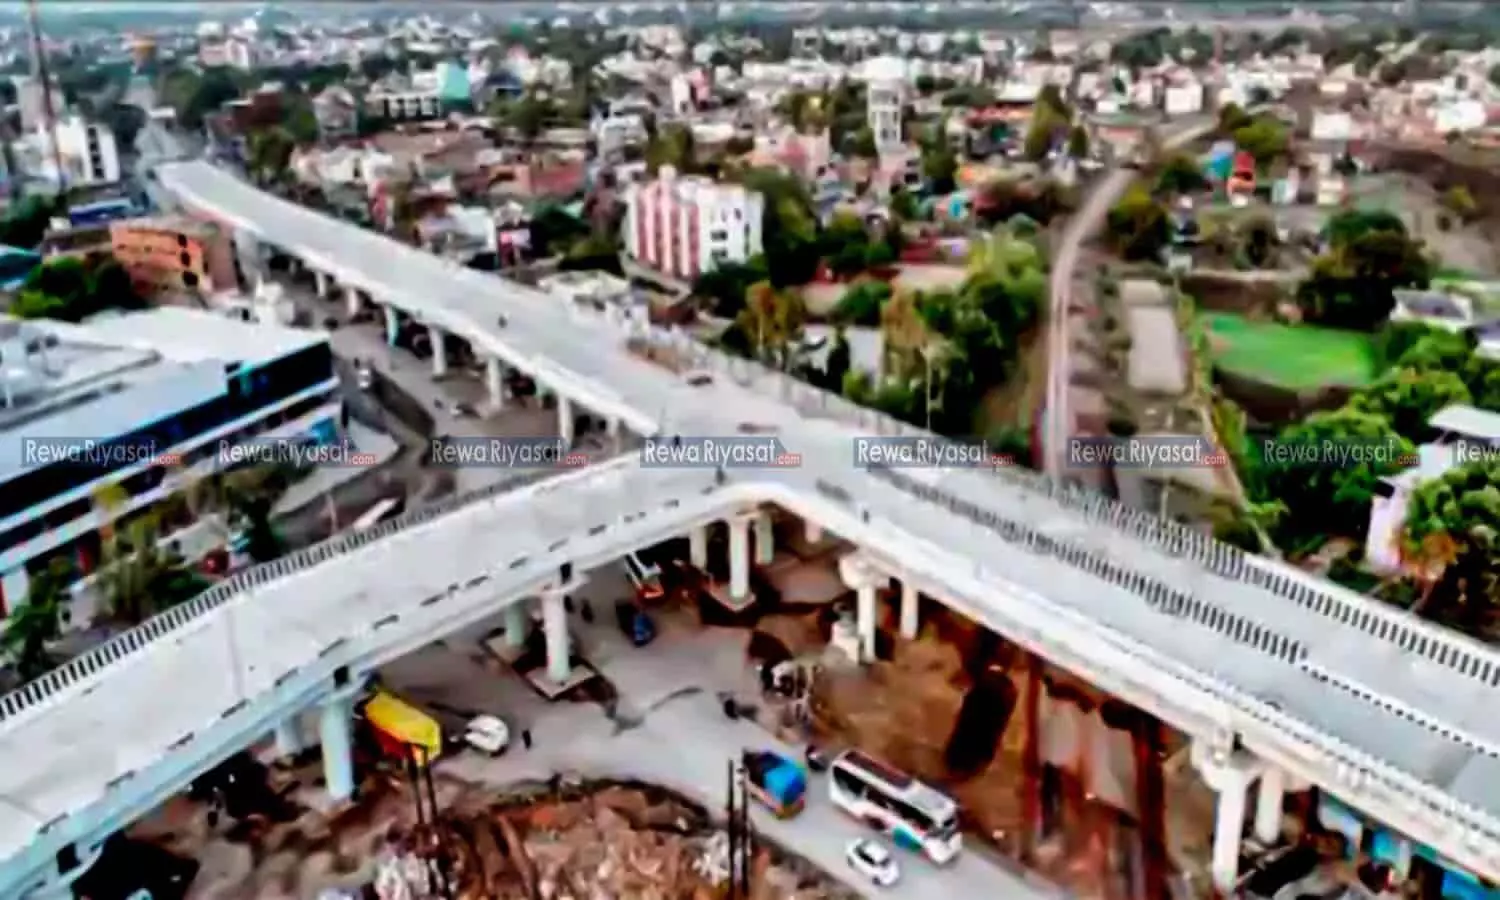 खुशखबरी: रीवा का तीसरा फ्लाईओवर ब्रिज बनकर तैयार: आज से जनता के लिए खुलेगा